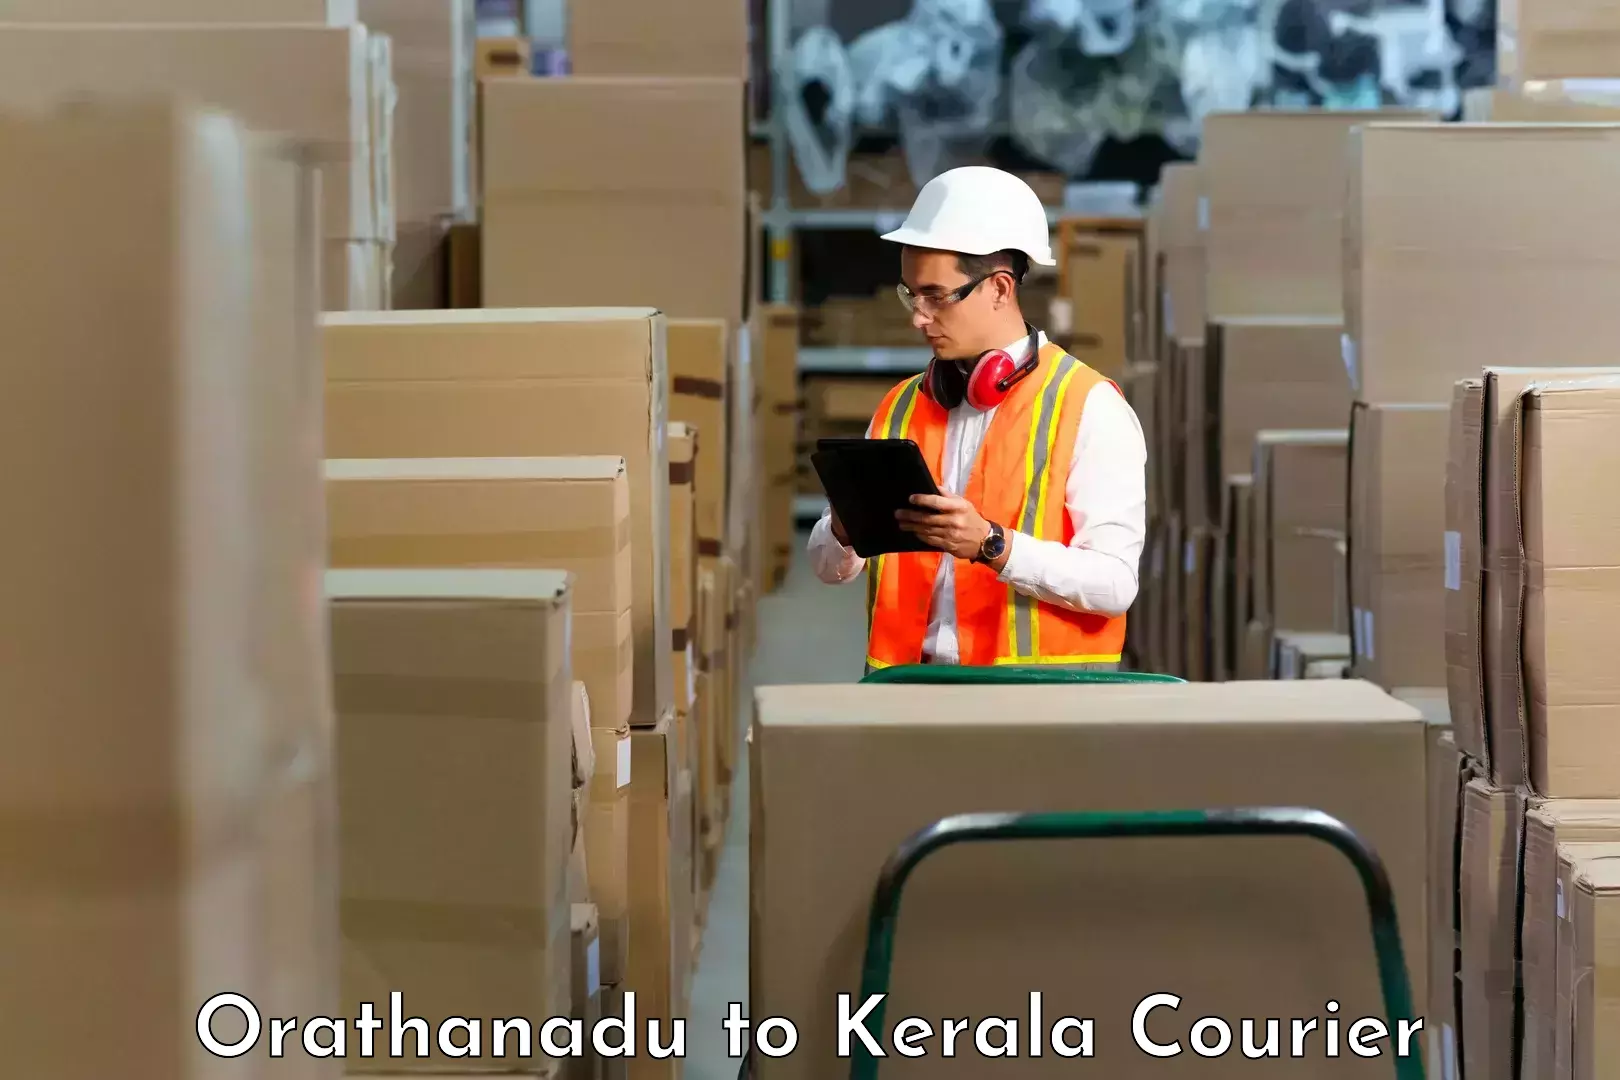 High-speed parcel service Orathanadu to IIIT Kottayam